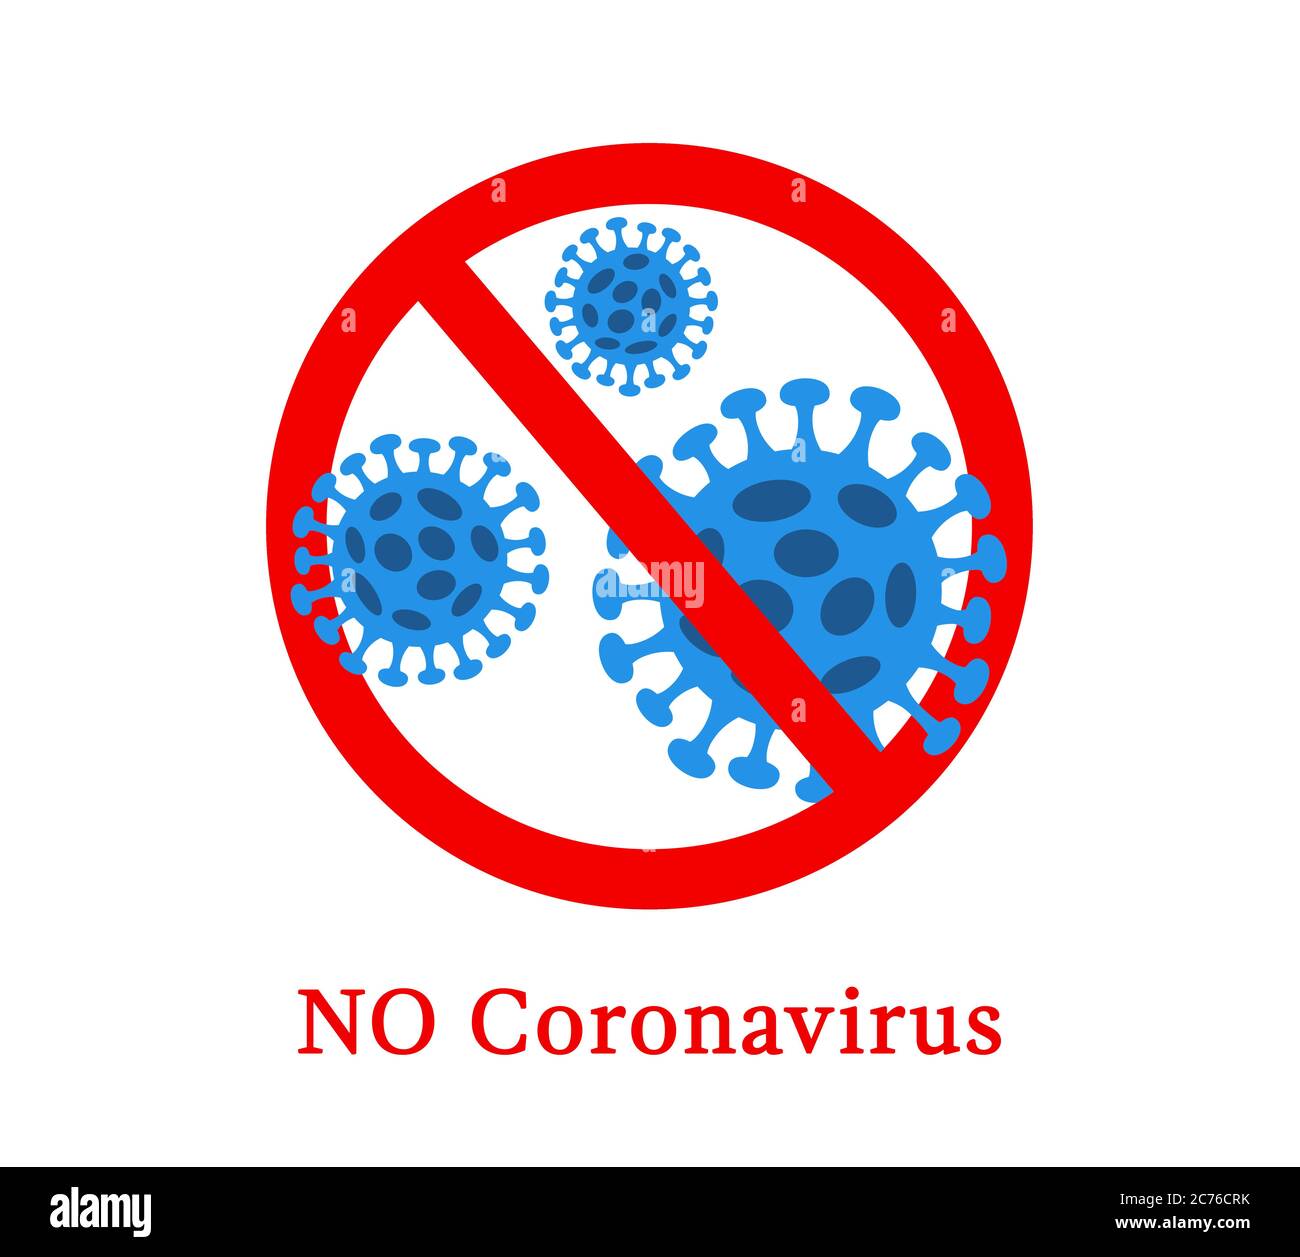 Resumen virus cepa modelo Novel coronavirus 2019-nCoV se tachó con el signo de PARADA rojo. El peligro del coronavirus y el riesgo para la salud pública. Pa Foto de stock